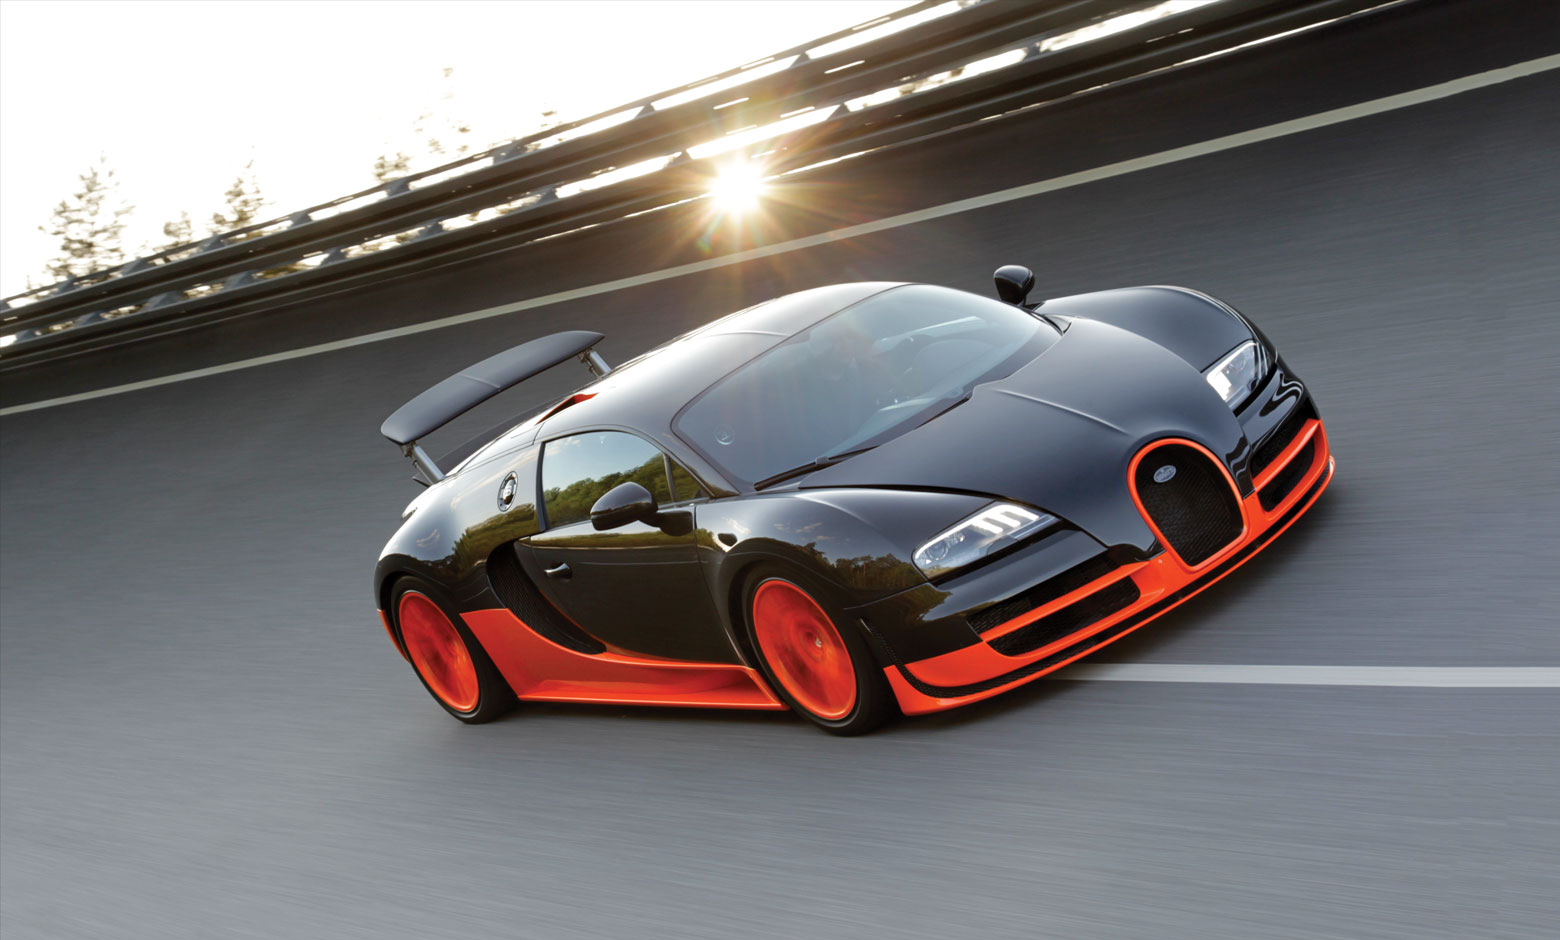 Loc 3: Bugatti Veyron Super Sport - 434 km/h